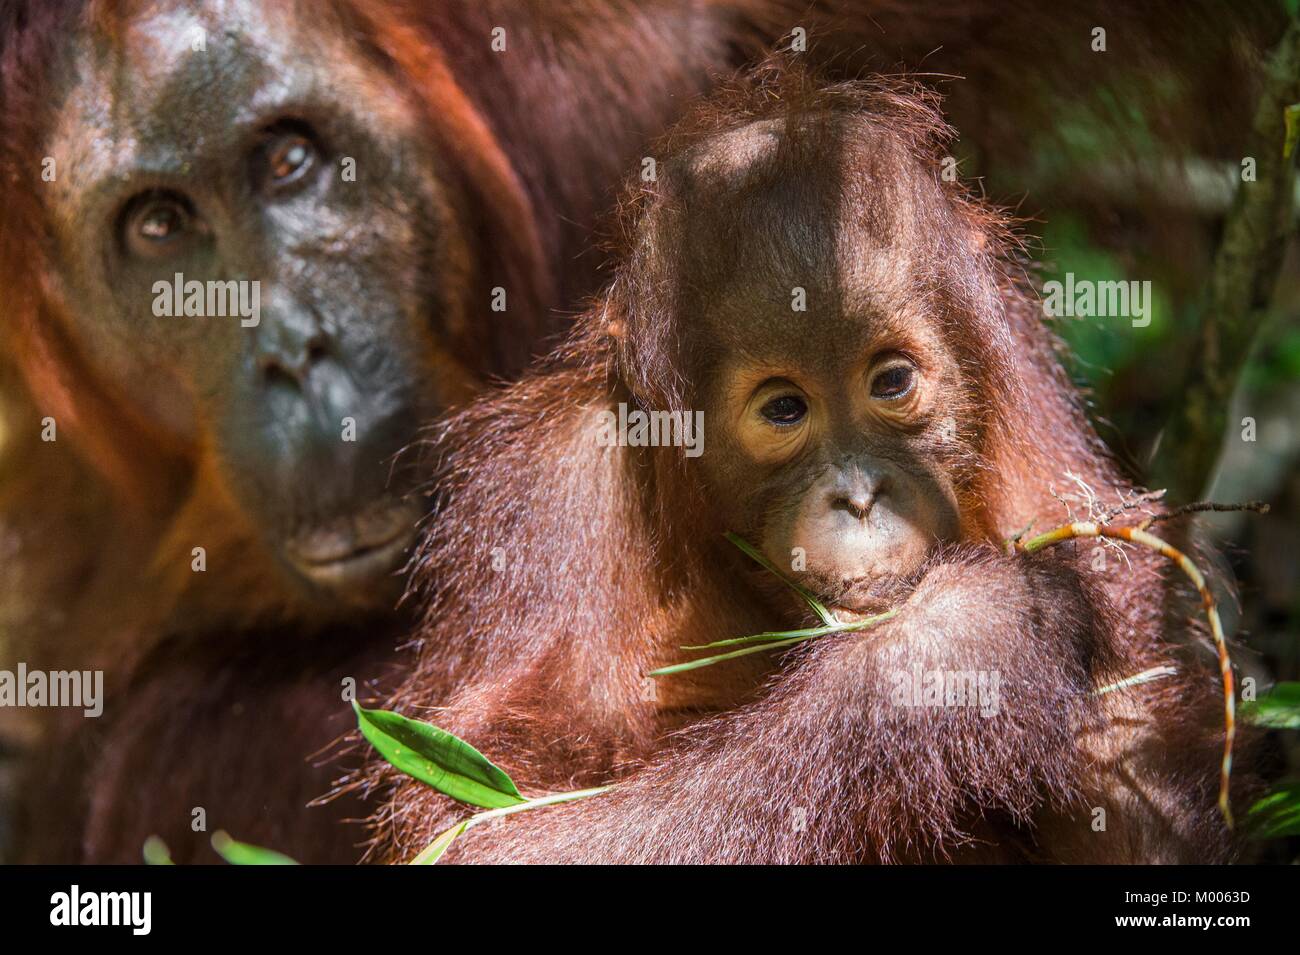 Madre orangután y un cachorro en un hábitat natural. Bornean wurmbii orangután (Pongo pygmaeus) en la naturaleza salvaje. Selva tropical de la isla de Borneo. Indonesia. Foto de stock